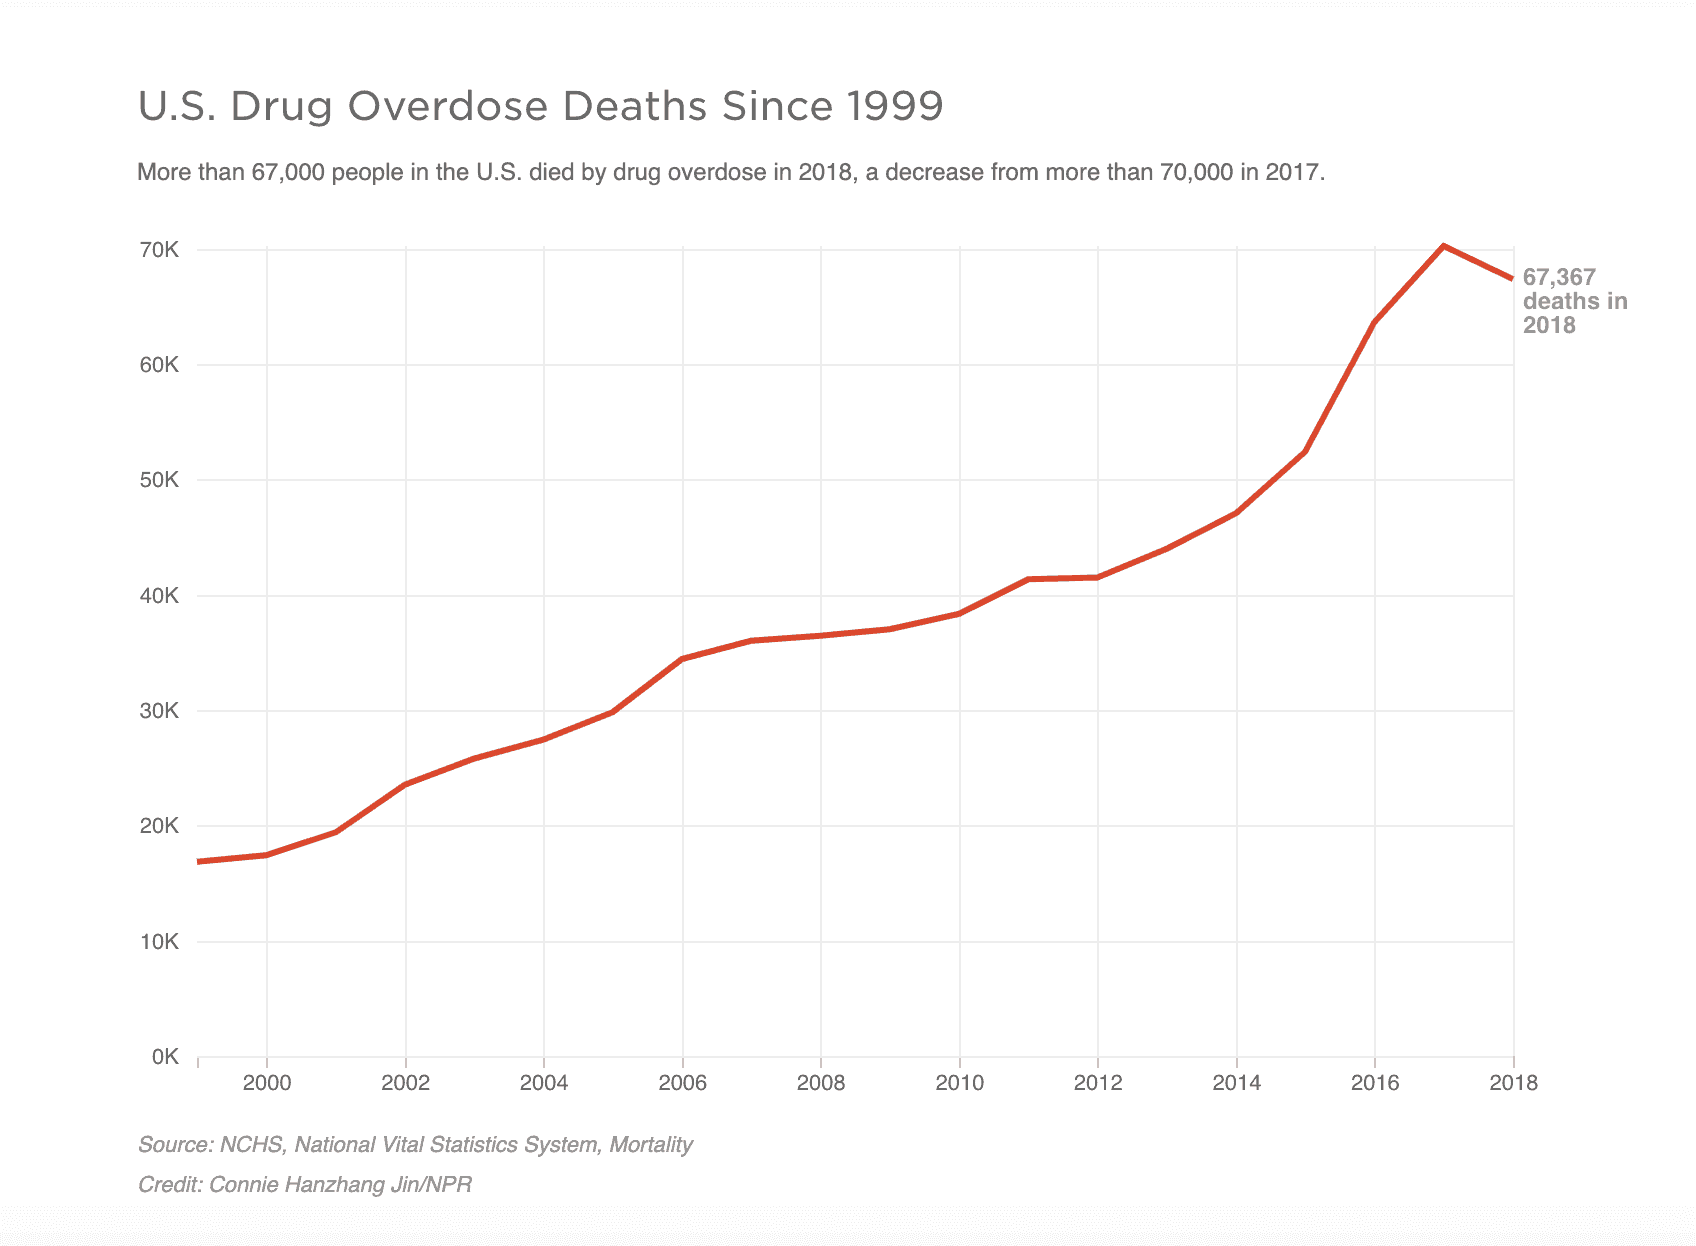 overdose deaths